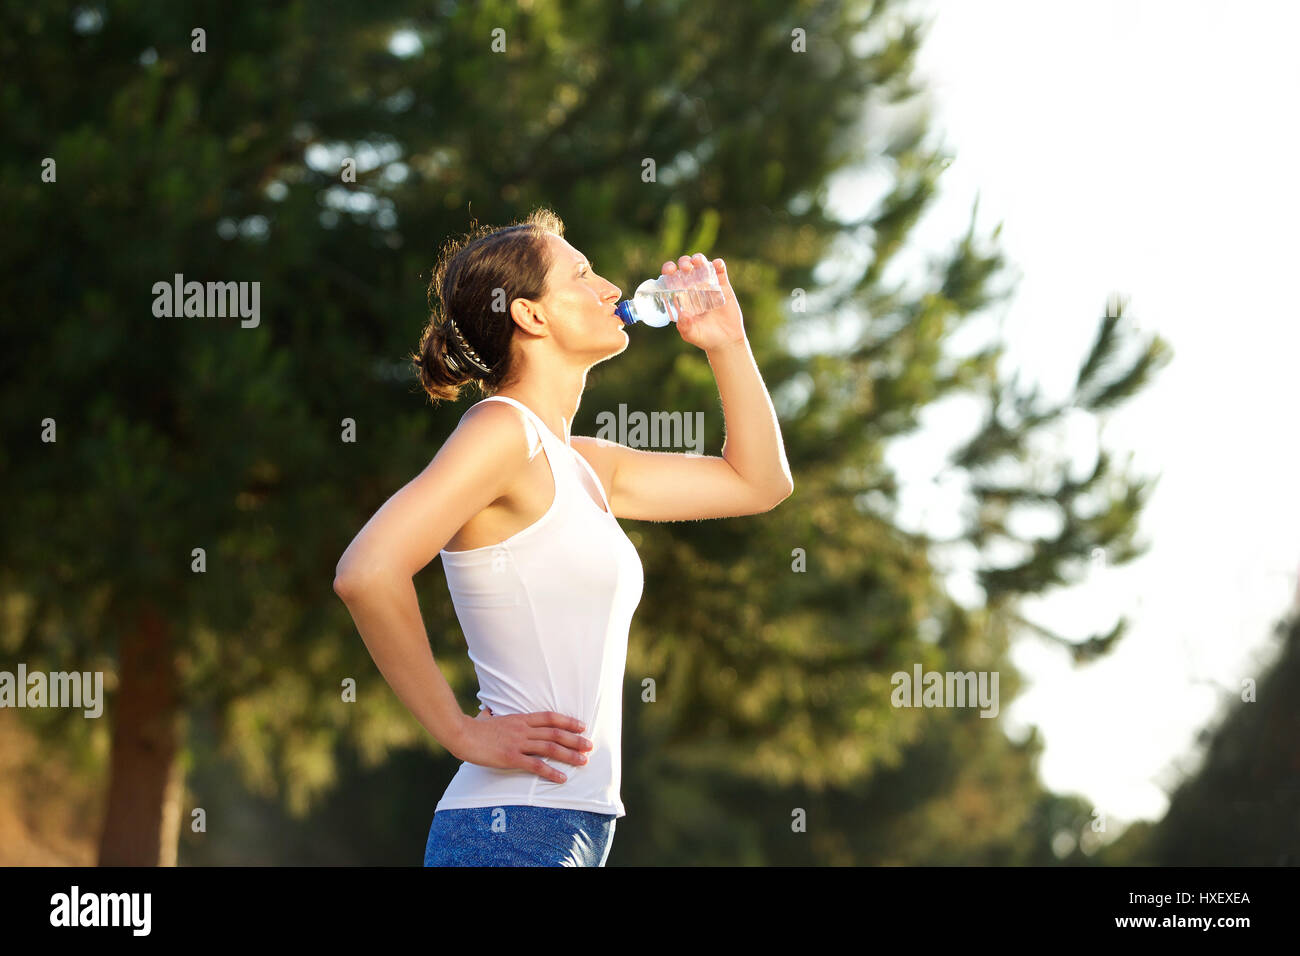 Portrait d'une femme en bonne santé l'eau potable de la bouteille après entraînement Banque D'Images